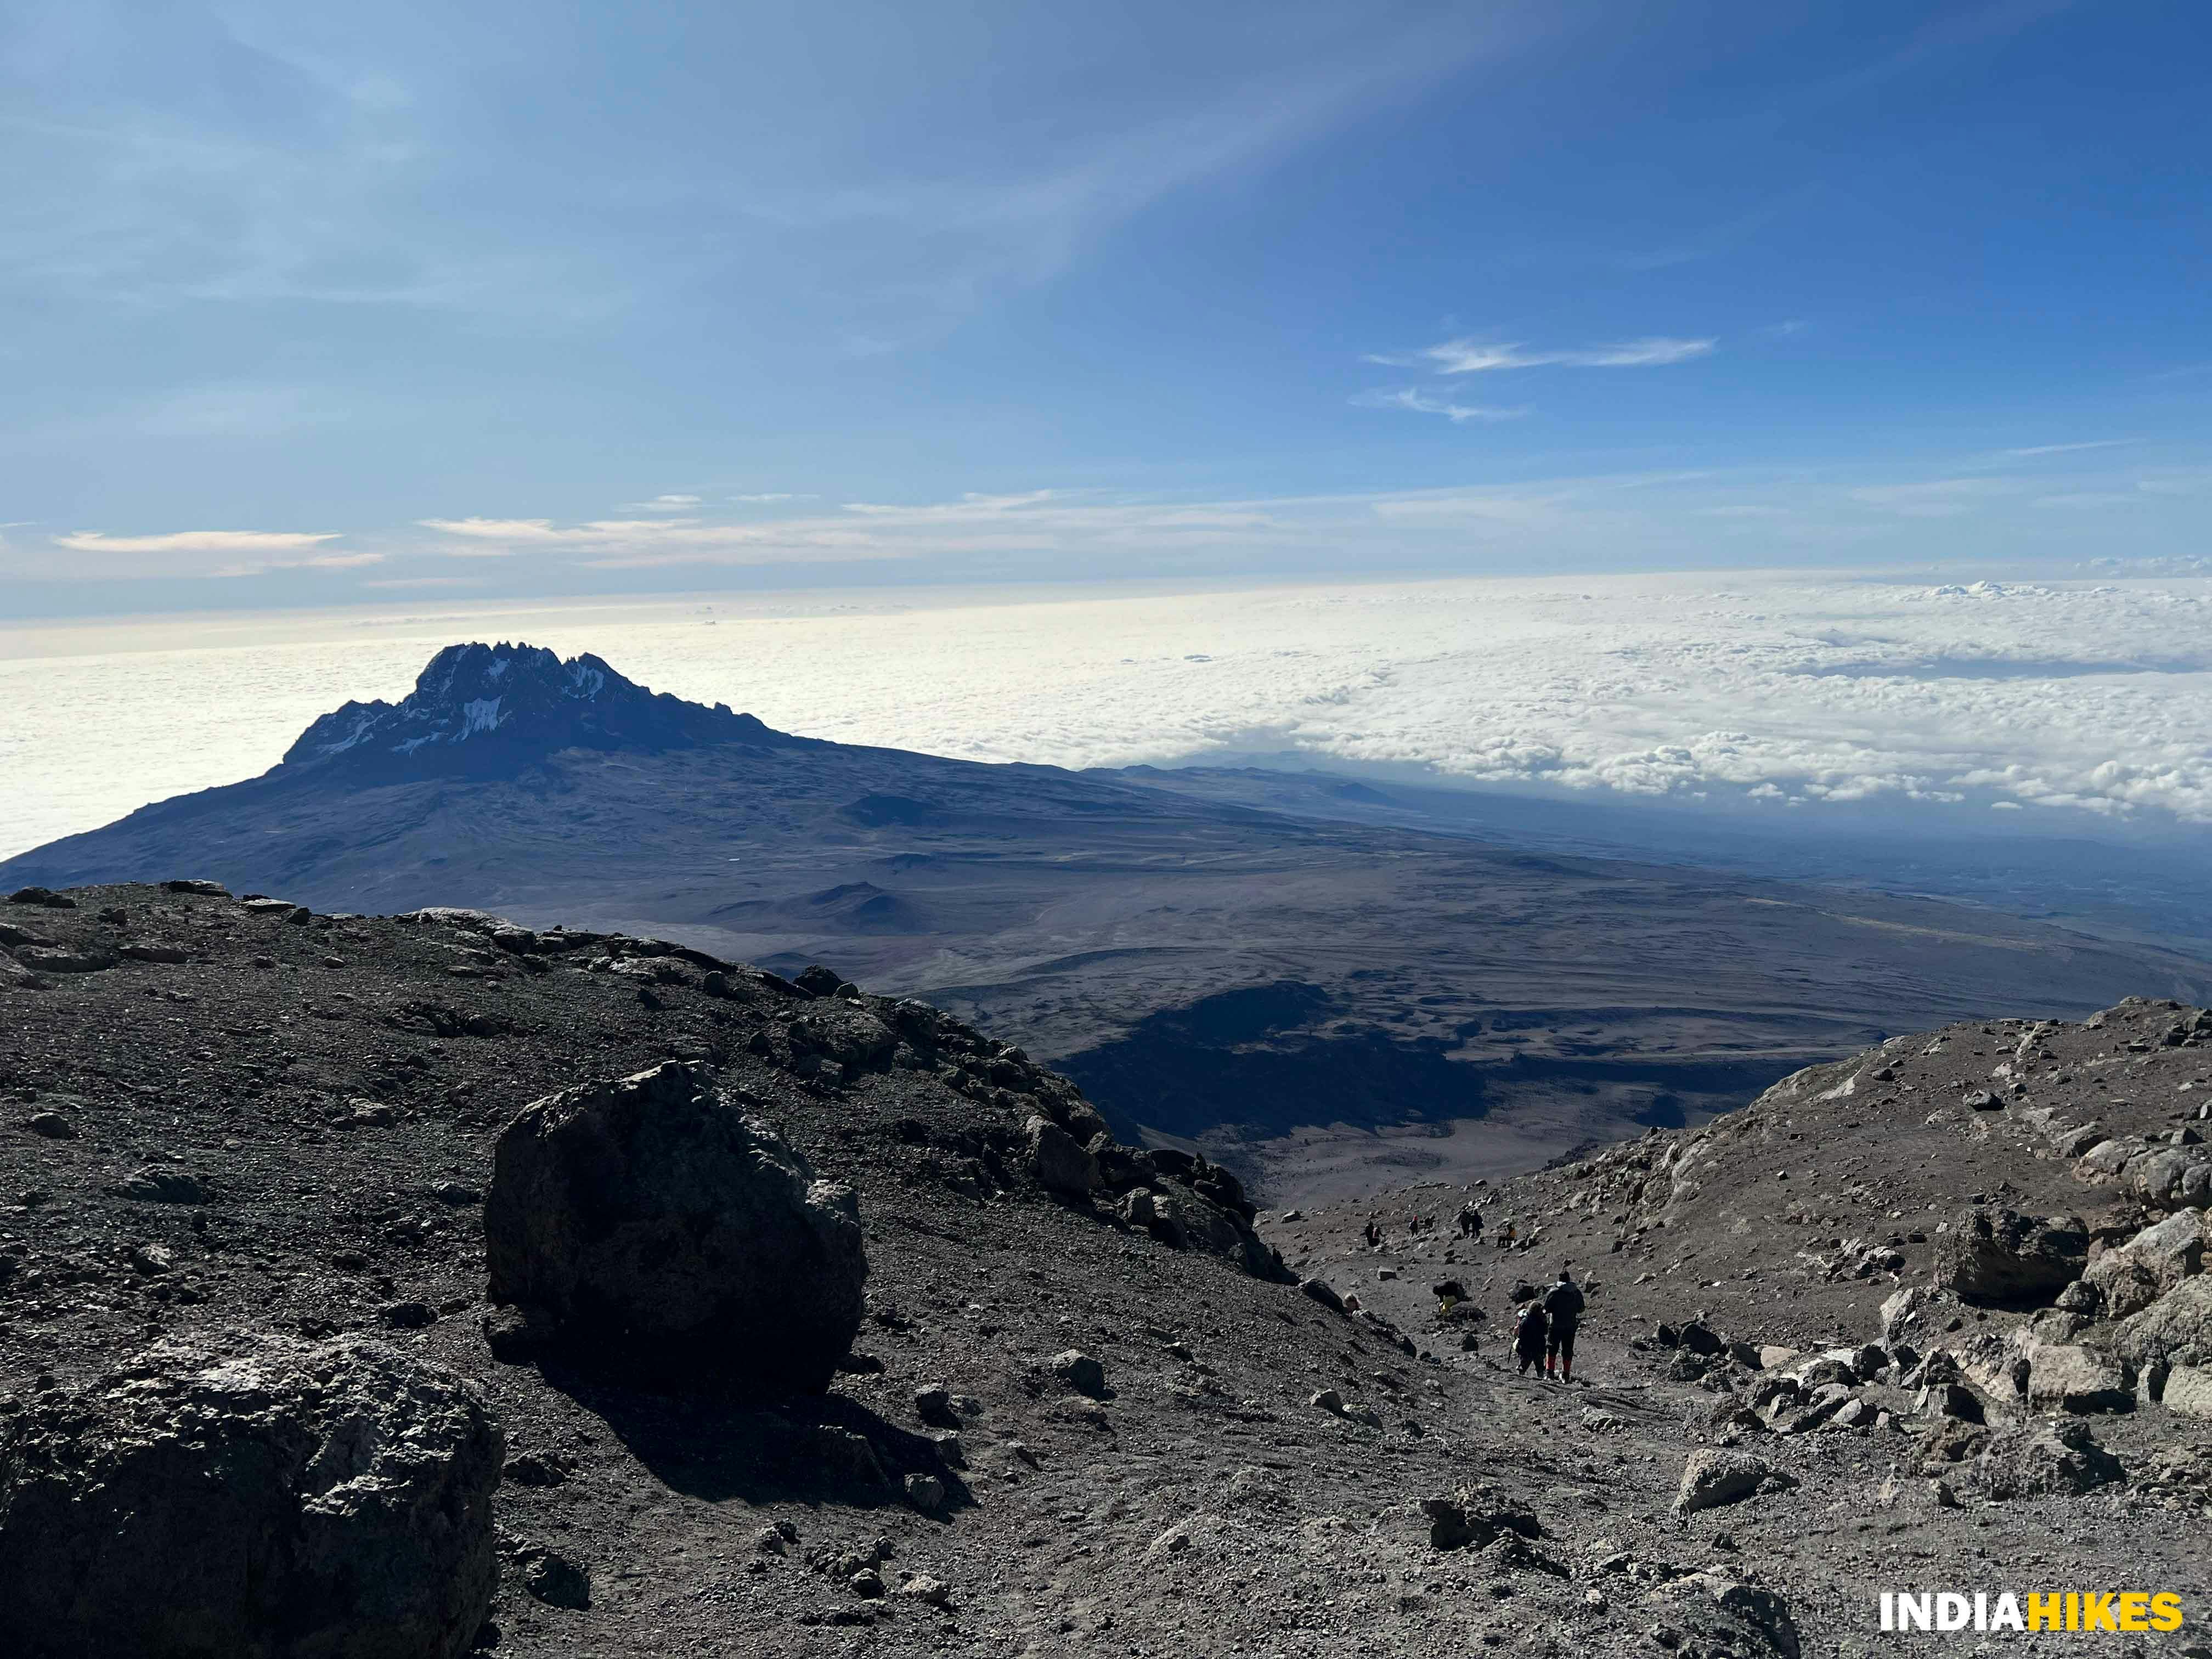 c7f00e63 389d 4c7c 8e20 24519a1c3299 descent from uhuru peak   mount kilimanjaro   indiahikes   huzeifa morbiwalla